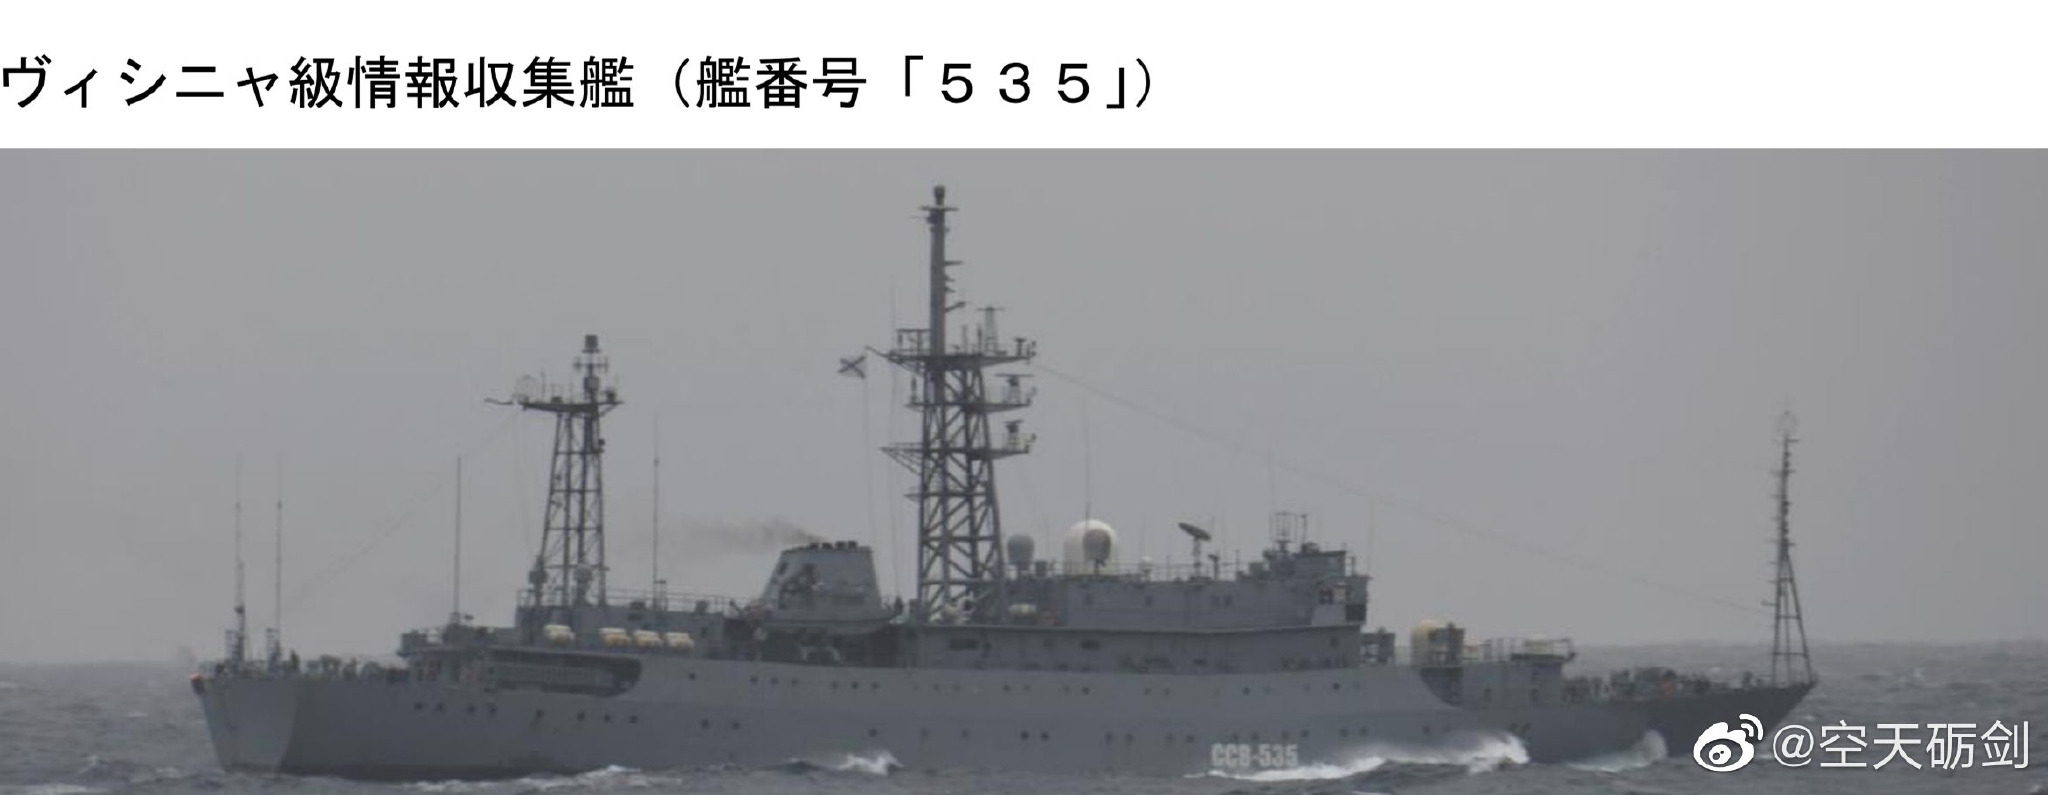 815型电子侦察船_搜狗百科